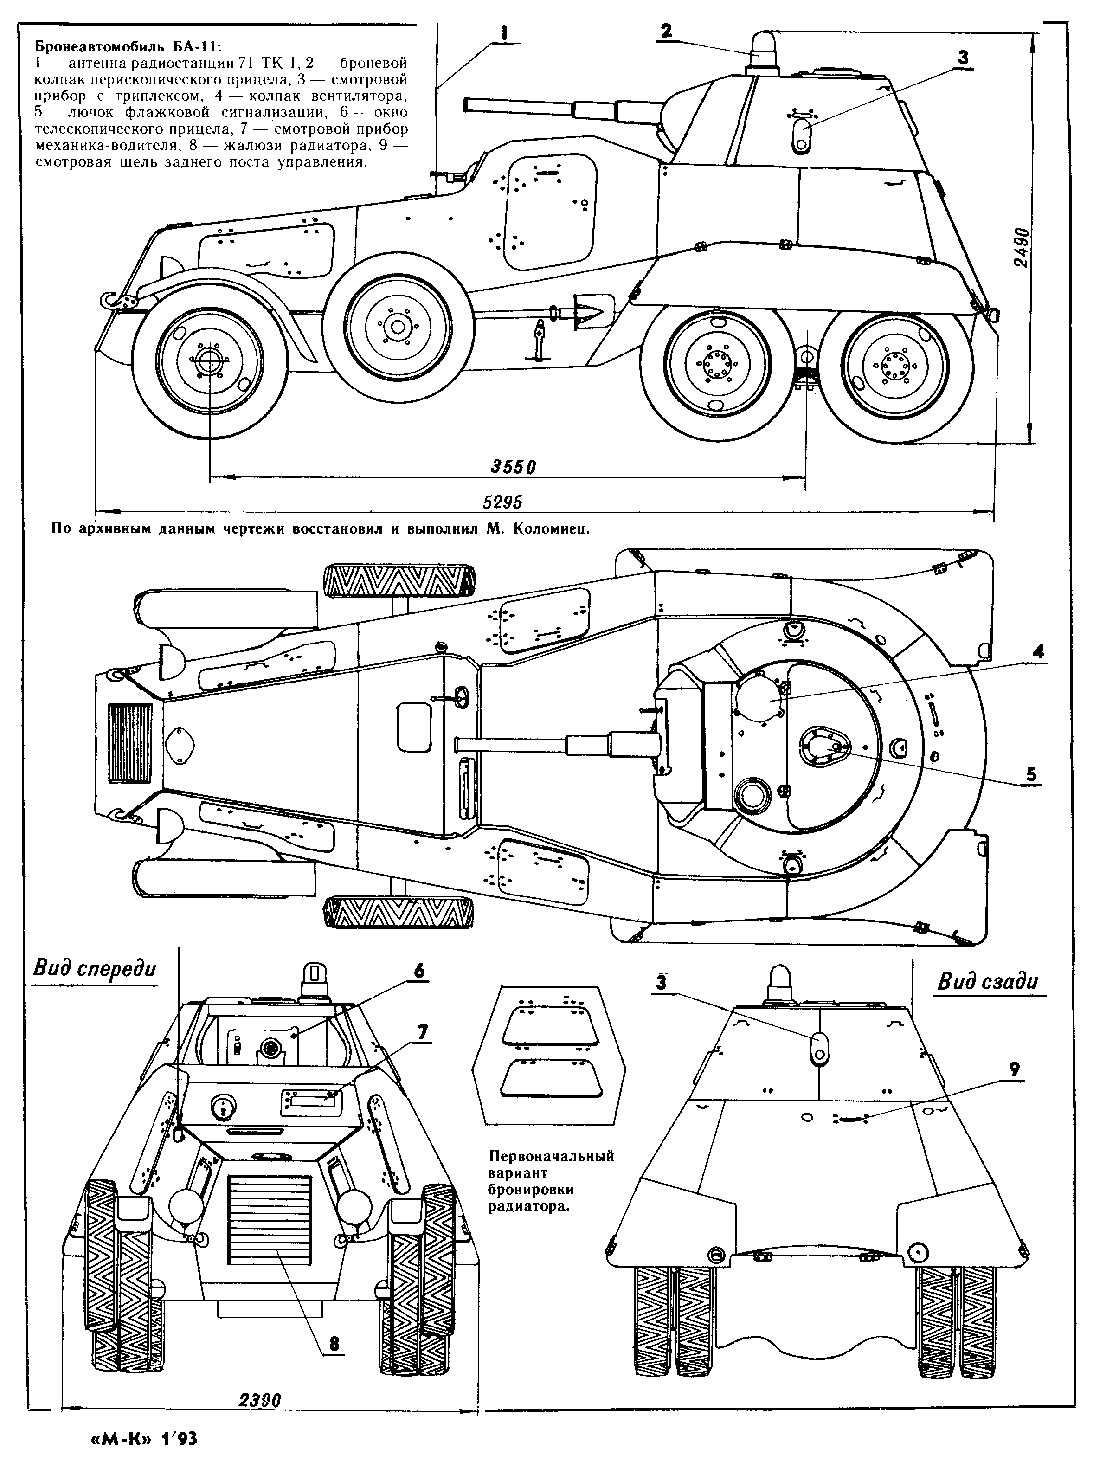 Чертеж бронеавтомобиля БА-11